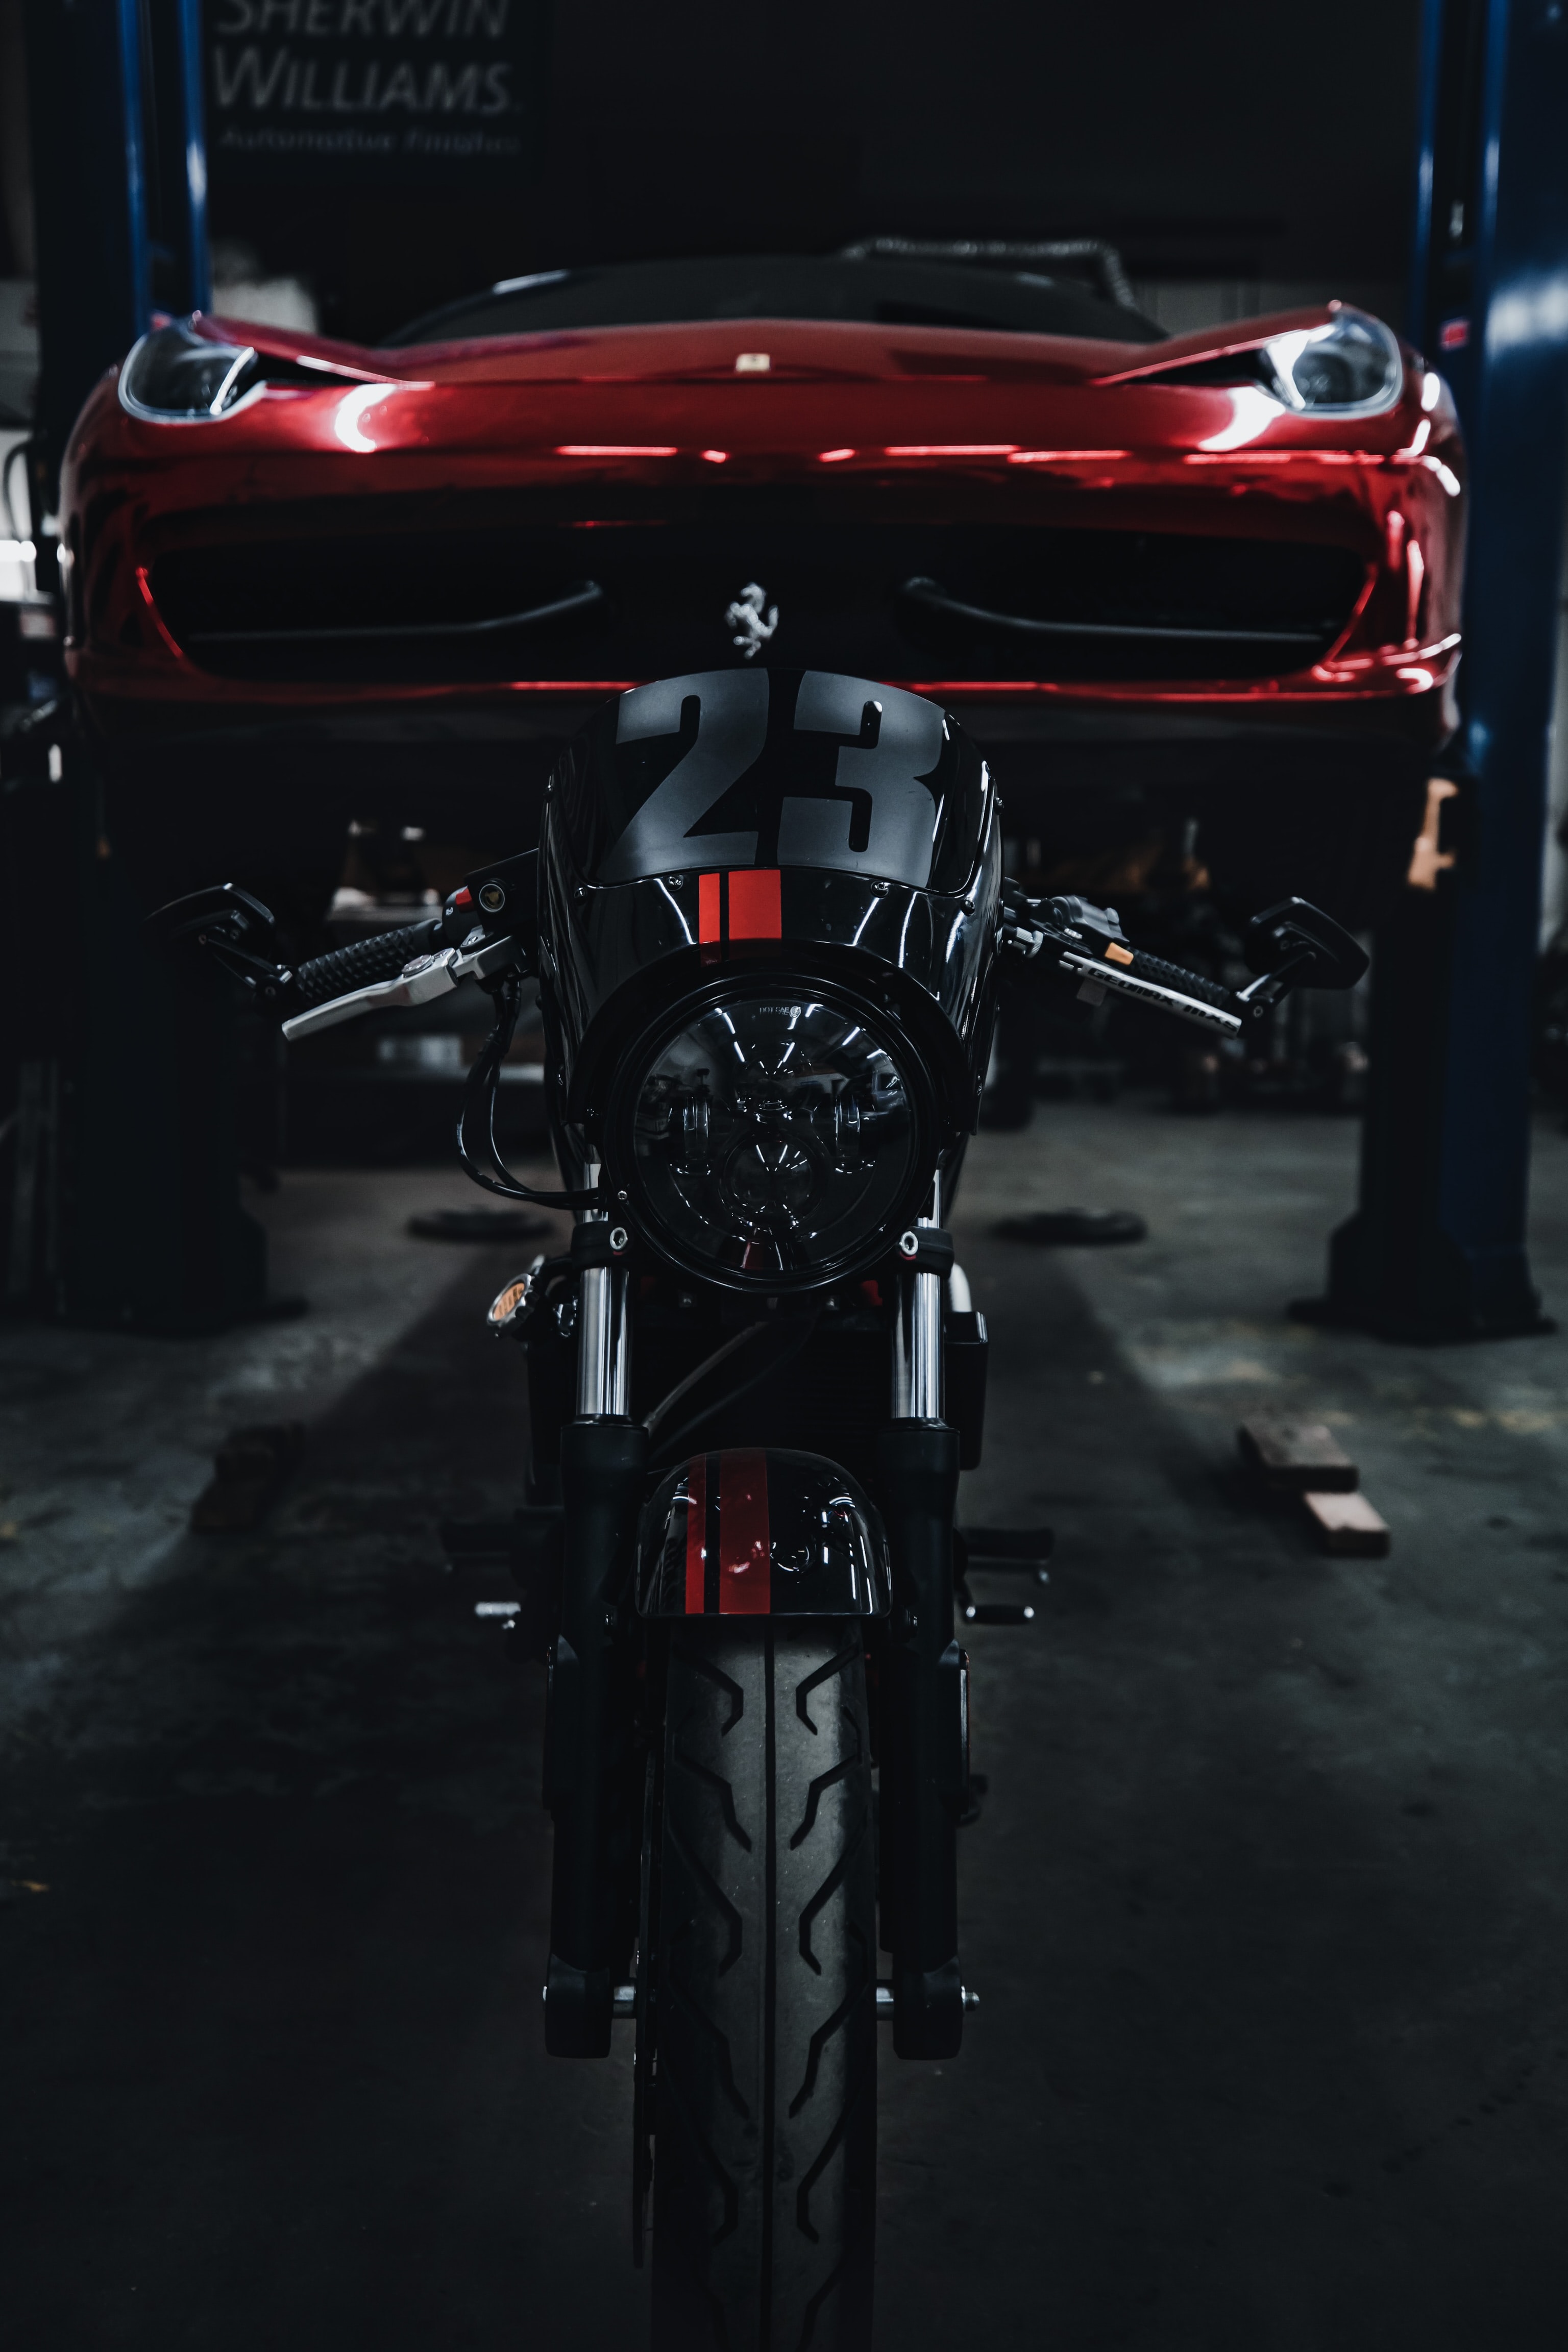 motorcycles, bike, black, red, car, motorcycle